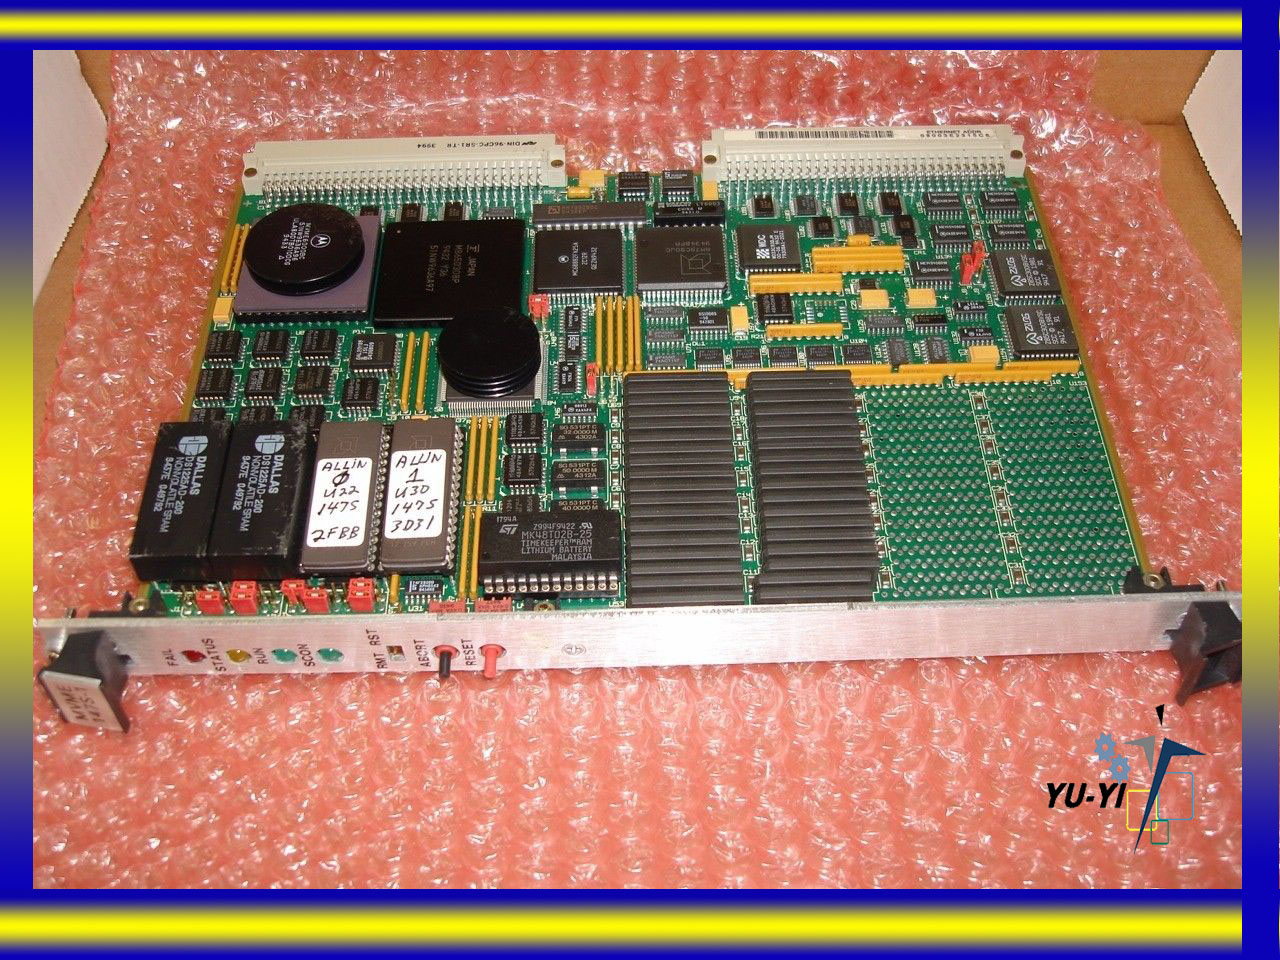 Motorola MVME147S-001 - 01-W3781B02 - MVME147 MPU VME CPU Module SCSI